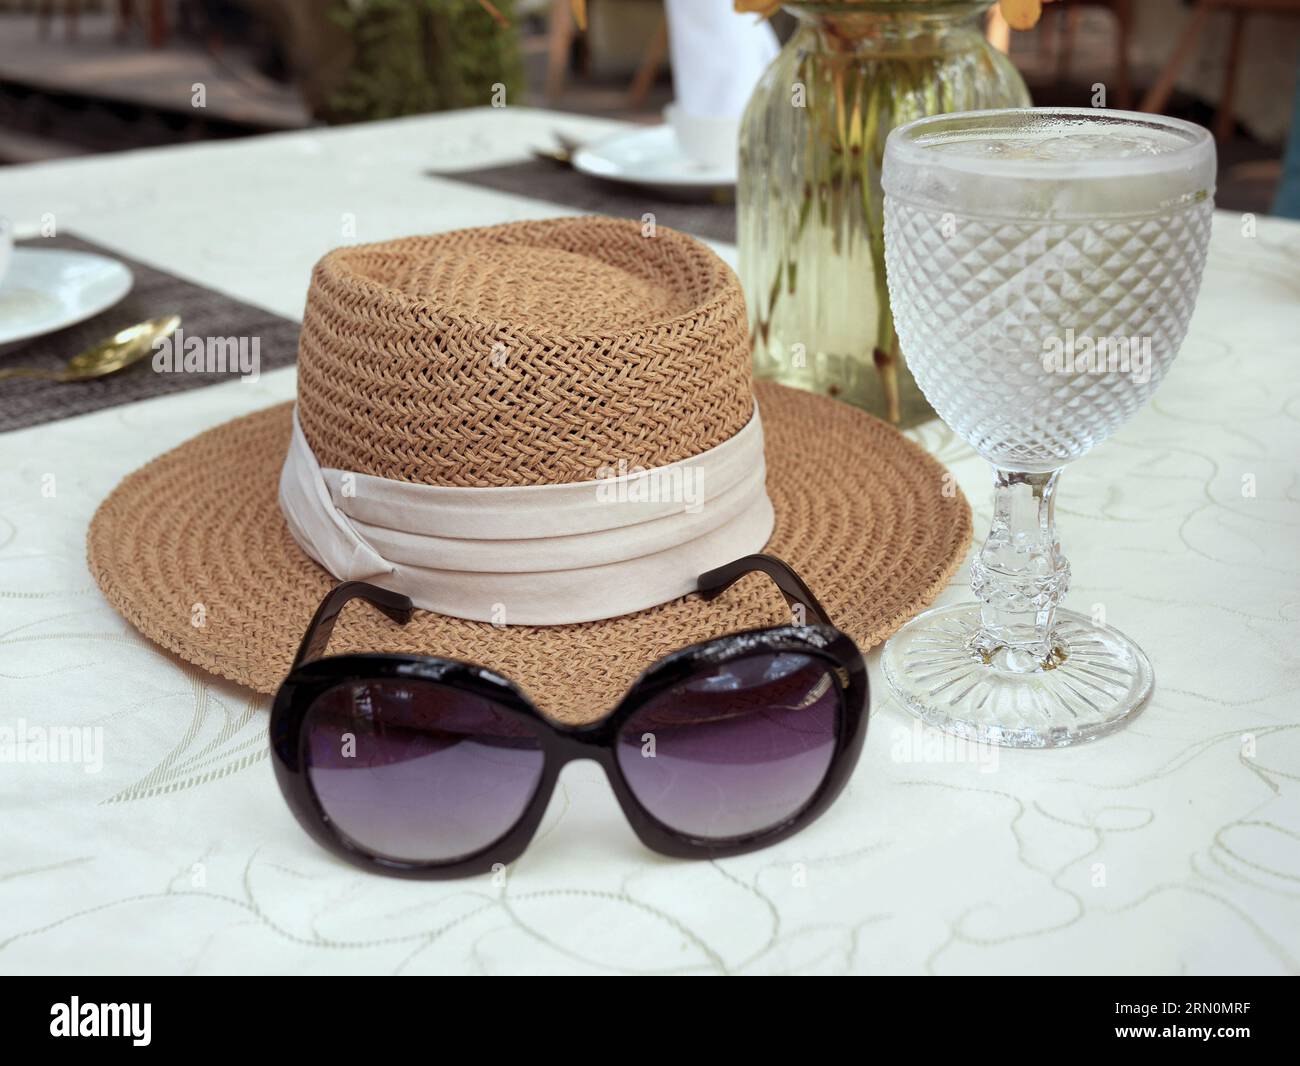 Eine Sonnenbrille und ein Sonnenhut aus gewebtem Stroh, verziert mit beigefarbenem Band auf dem weißen Tischtuch, ein Mittagstisch mit Kristallstielglas und ein va Stockfoto